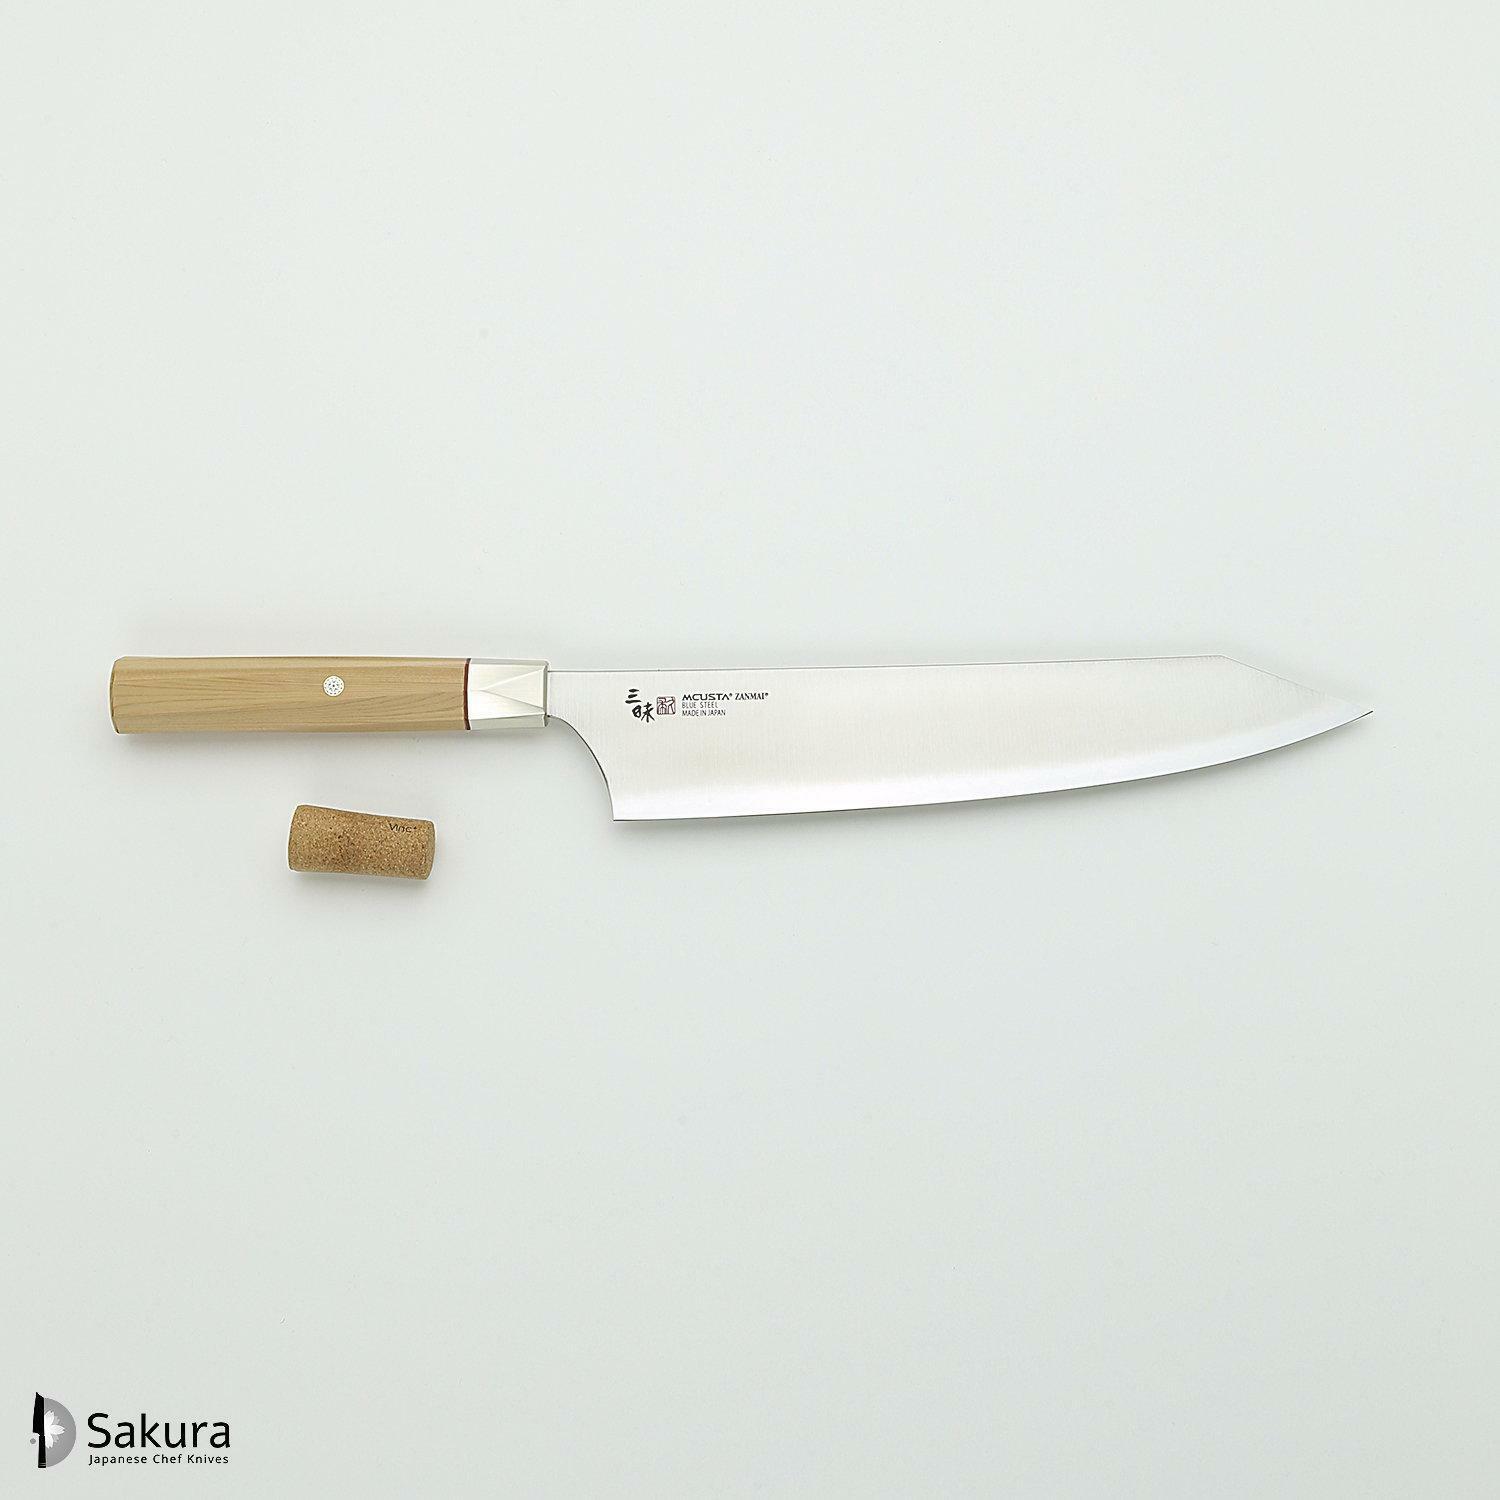 סכין שף רב-תכליתית גִּיוּטוֹ 240מ״מ מחושלת בעבודת יד 3 שכבות: פלדת פחמן יפנית מתקדמת מסוג Aogami Super עטופה פלדת אל-חלד גימור מט מלוטש מקוסטה זאנמאיי יפן ZBX-5007B